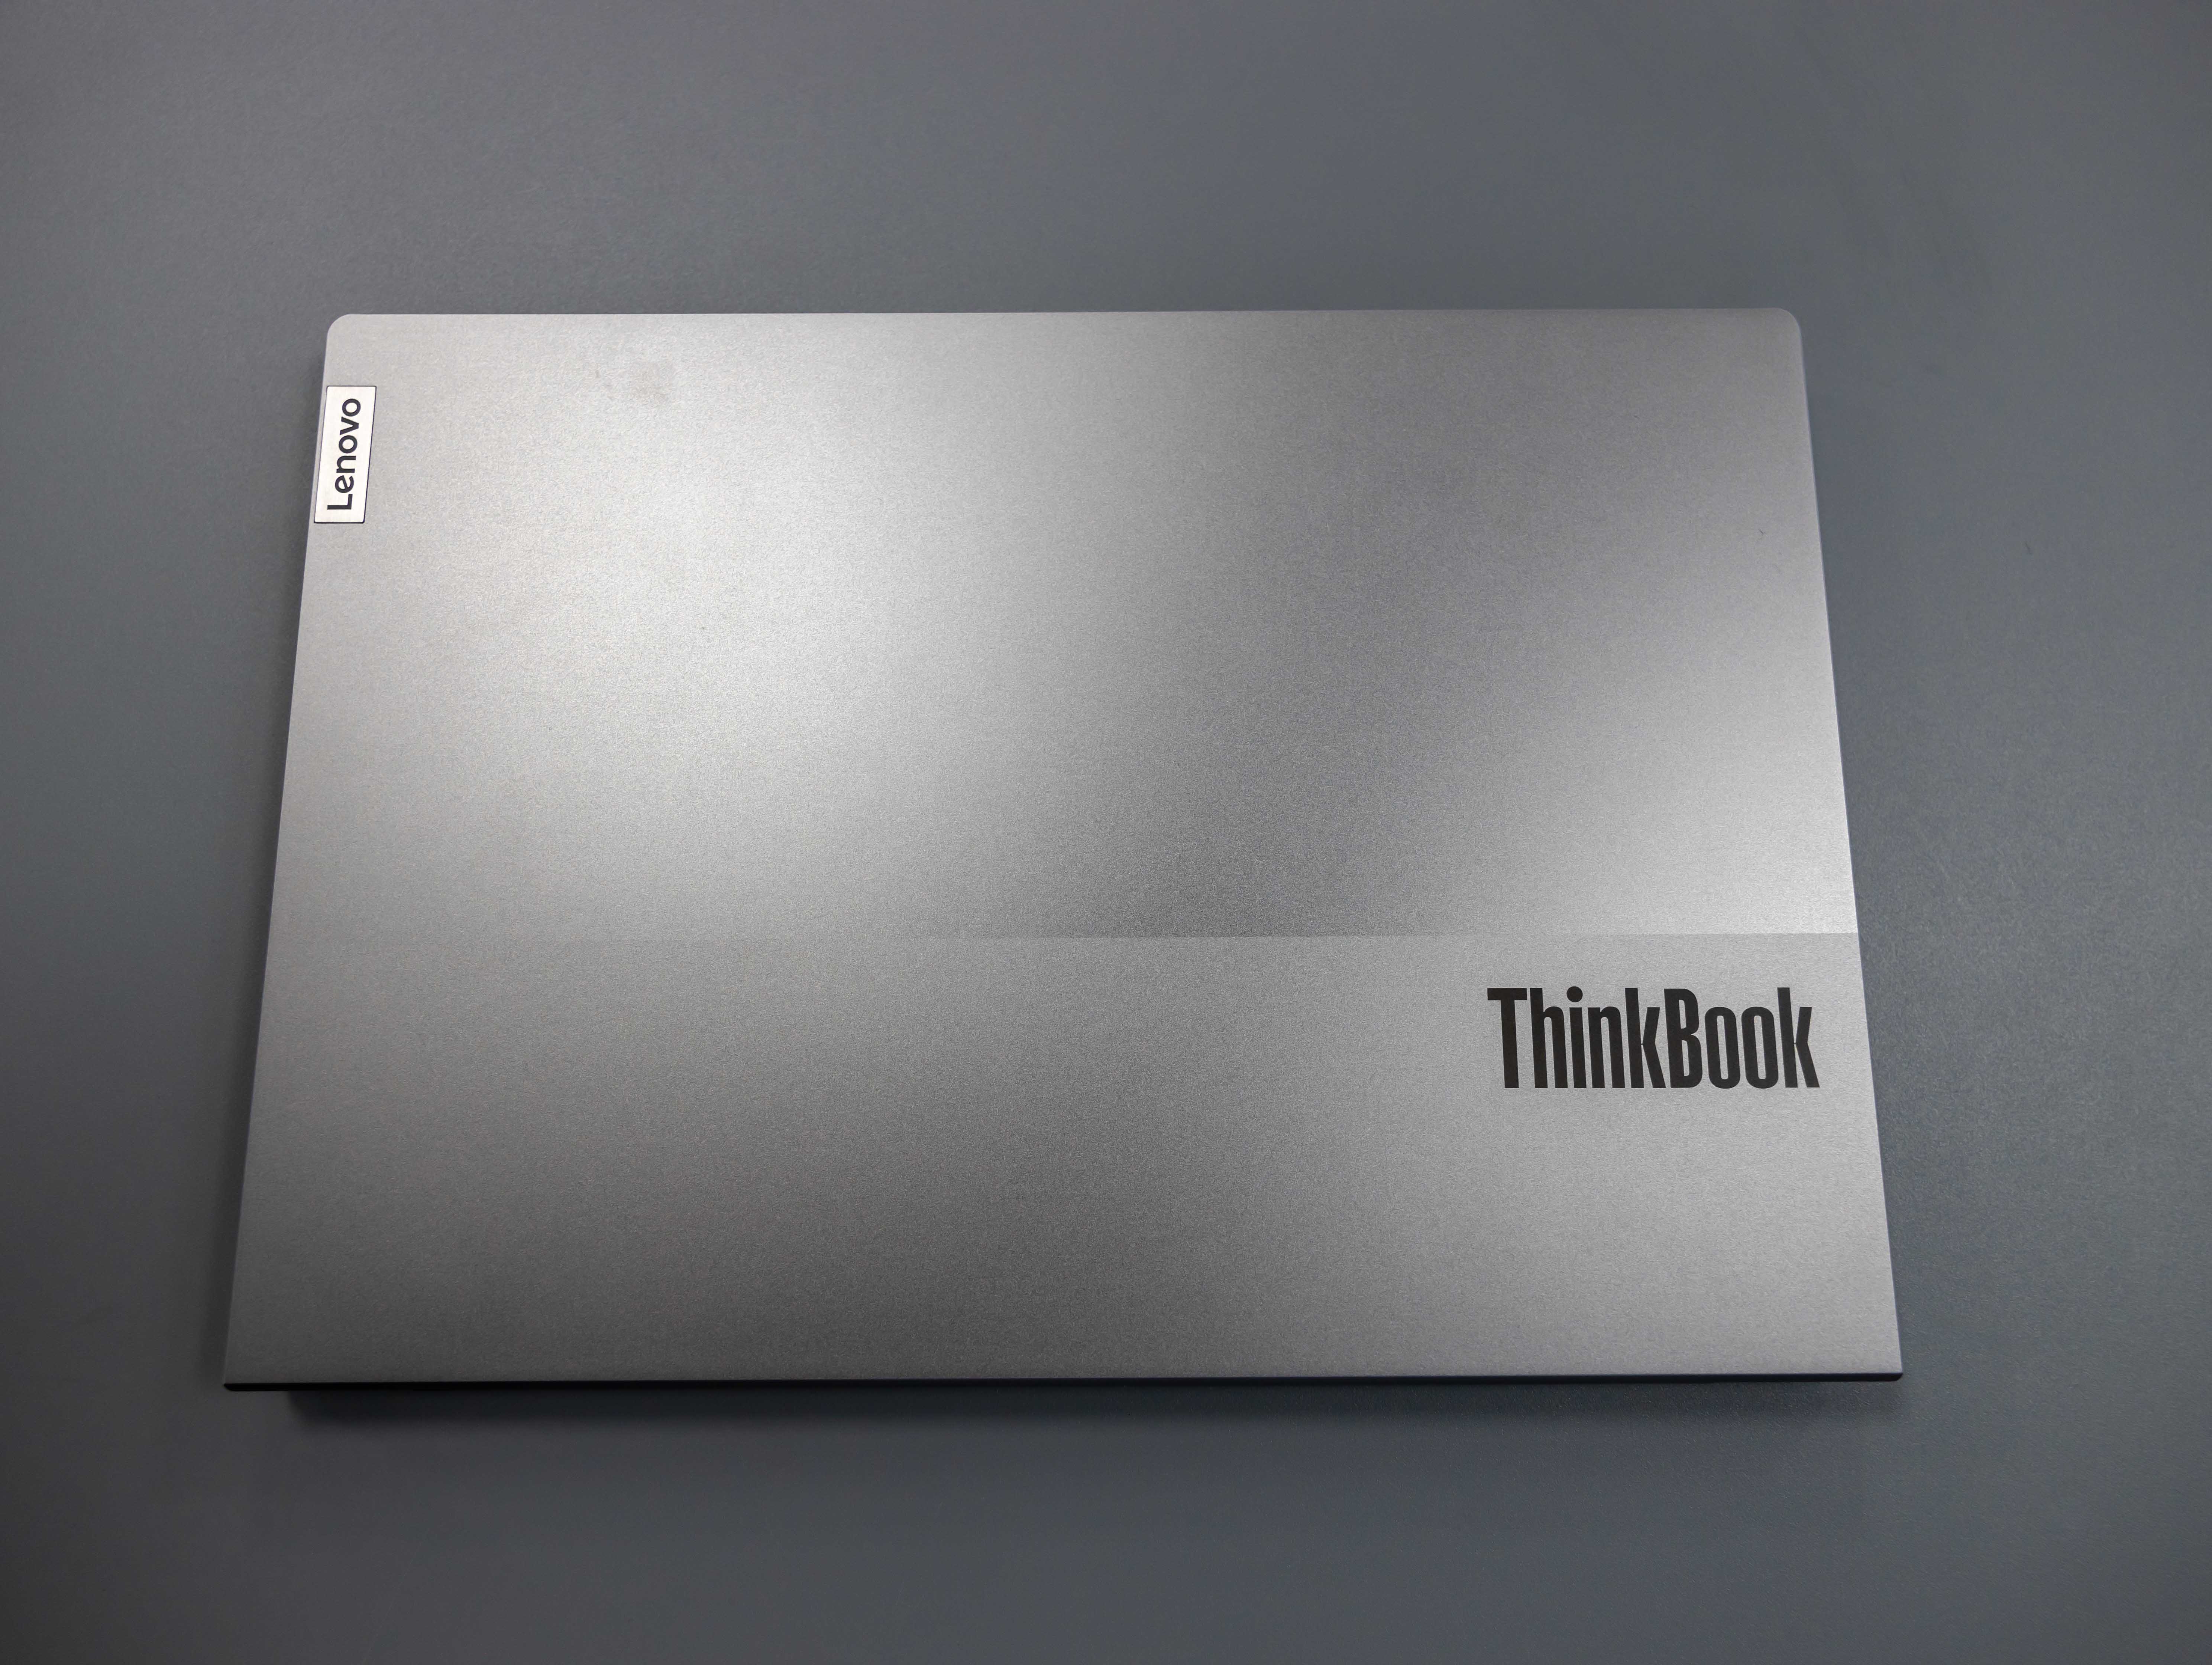 Cấu hình của ThinkBook 13s G2 tối ưu cho các tác vụ văn phòng, còn với những tựa game nặng thì đây không phải là một sự lựa chọn phù hợp 